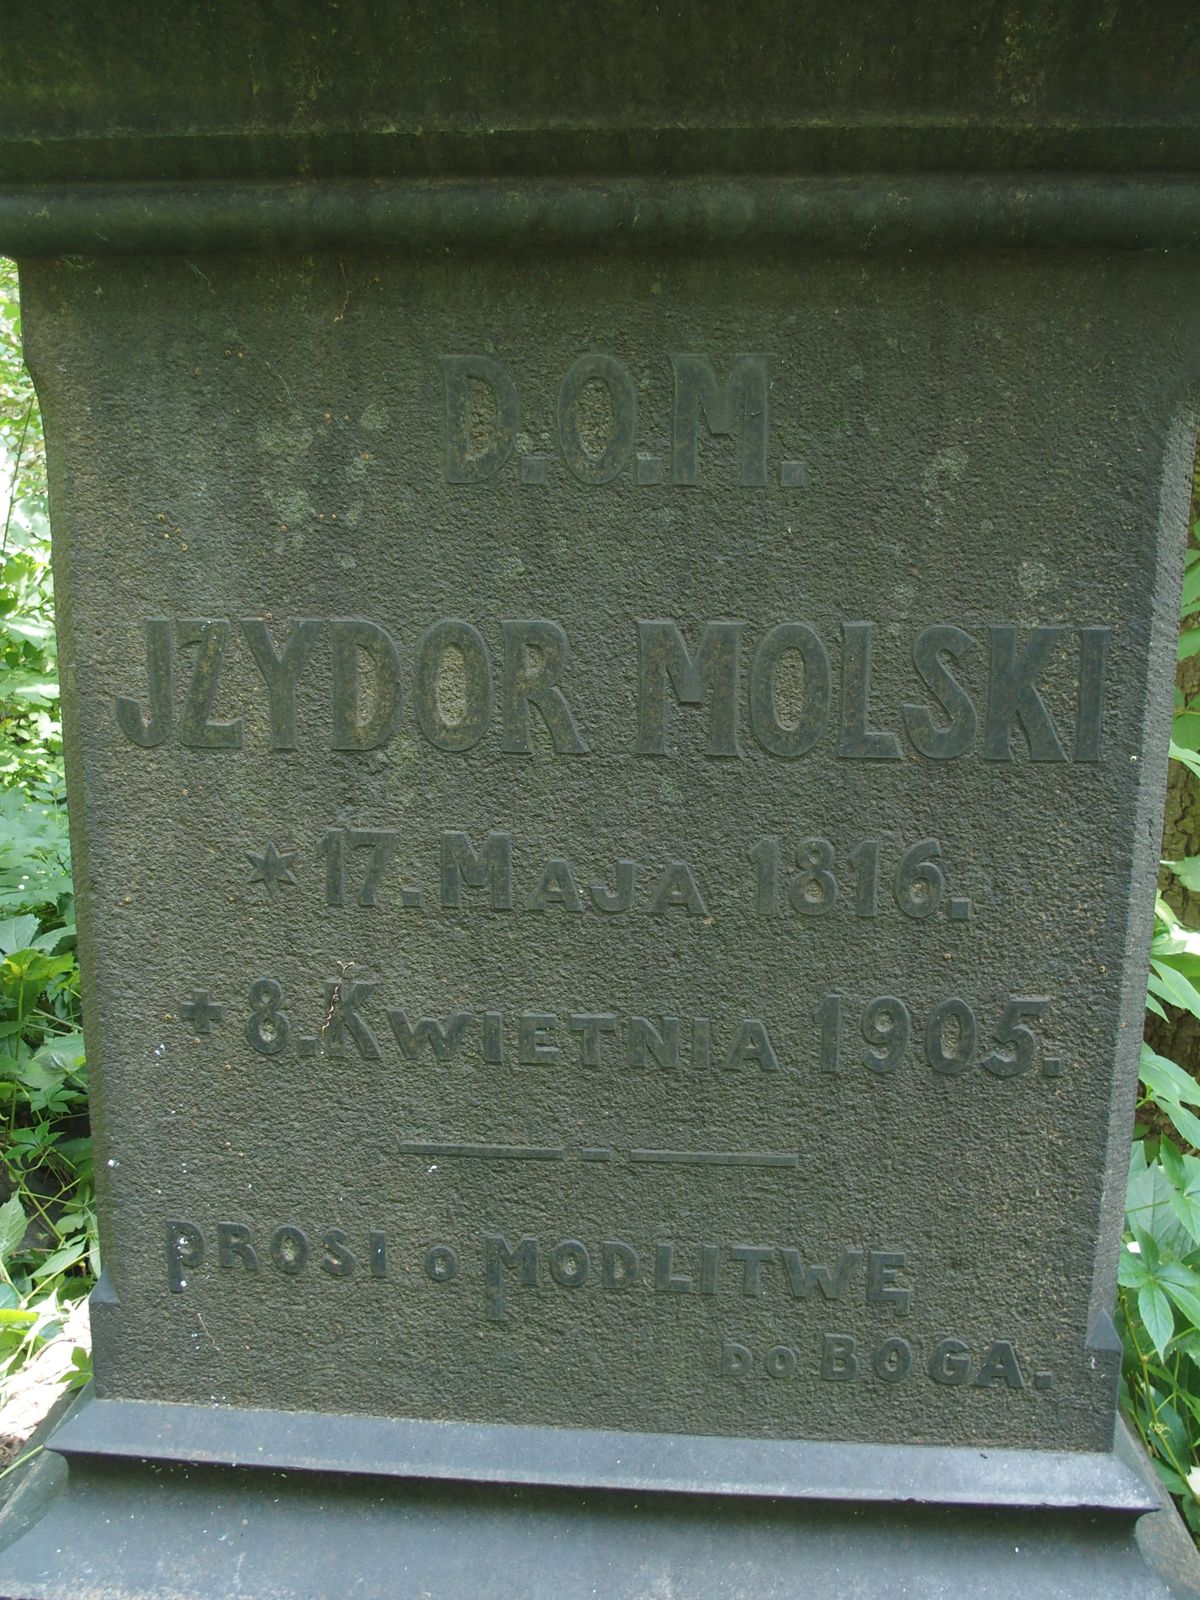 Napis z nagrobka Izydora Molskiego, cmentarz Bajkowa w Kijowie, stan z 2021